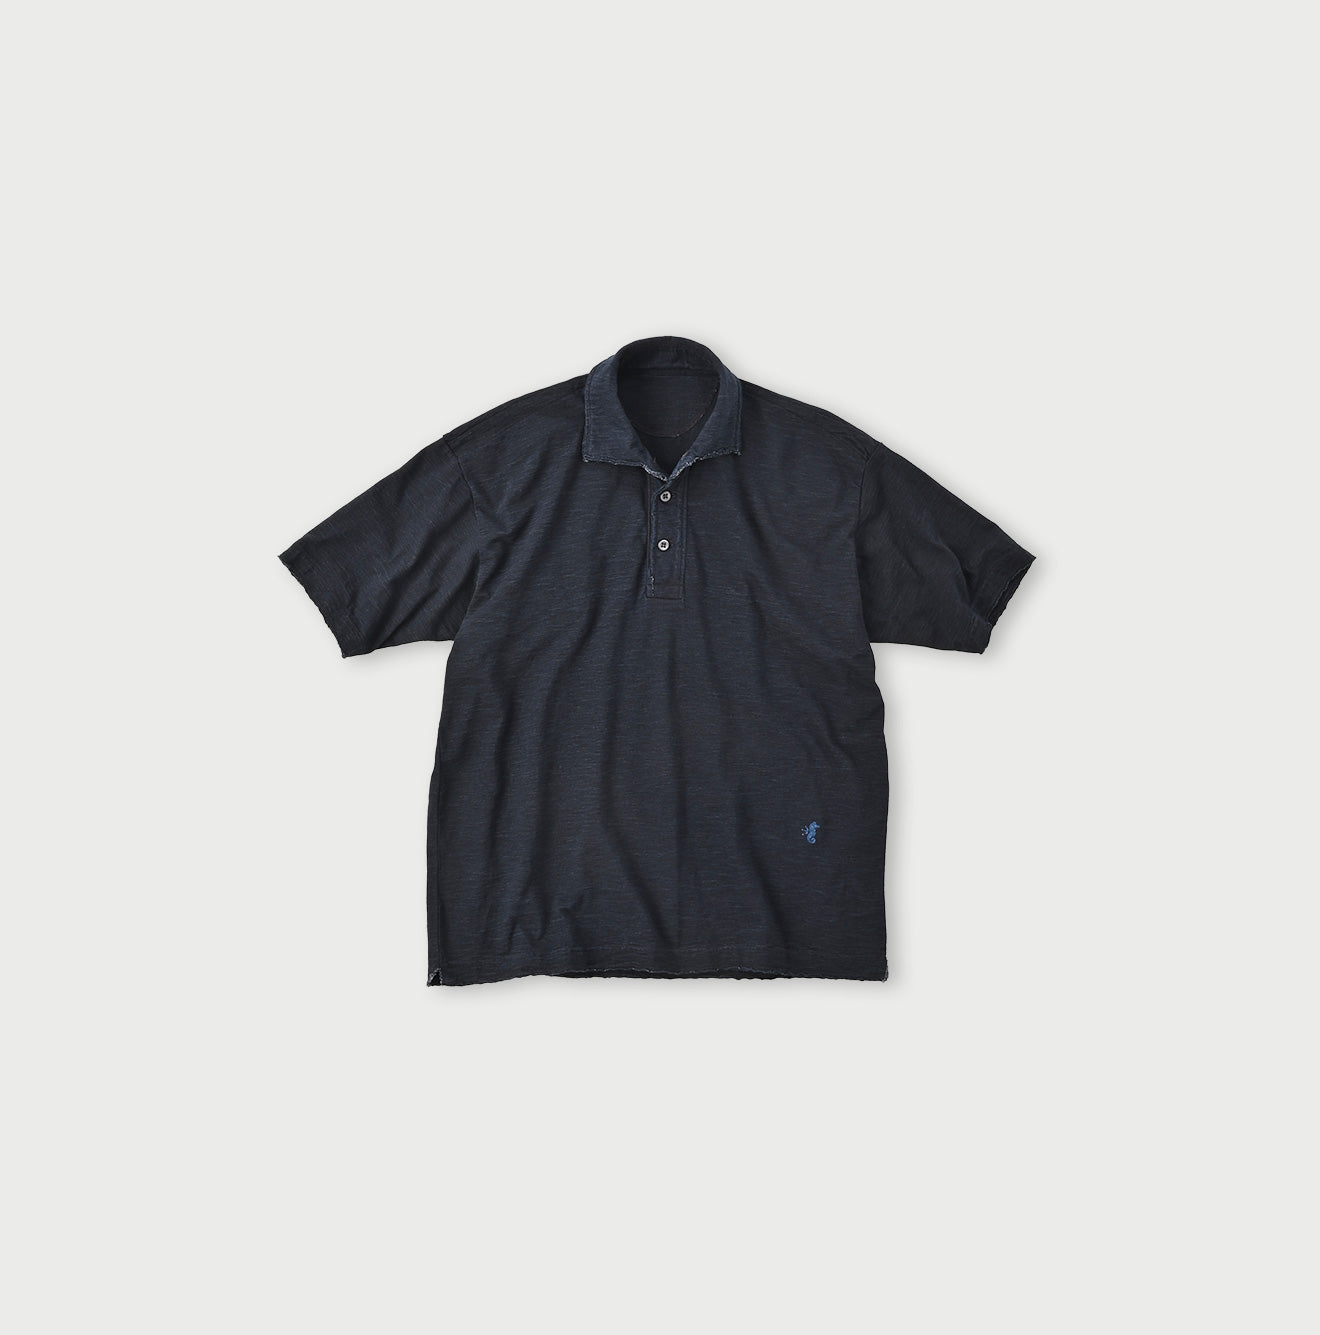 Indigo 908 Ocean Polo Shirt